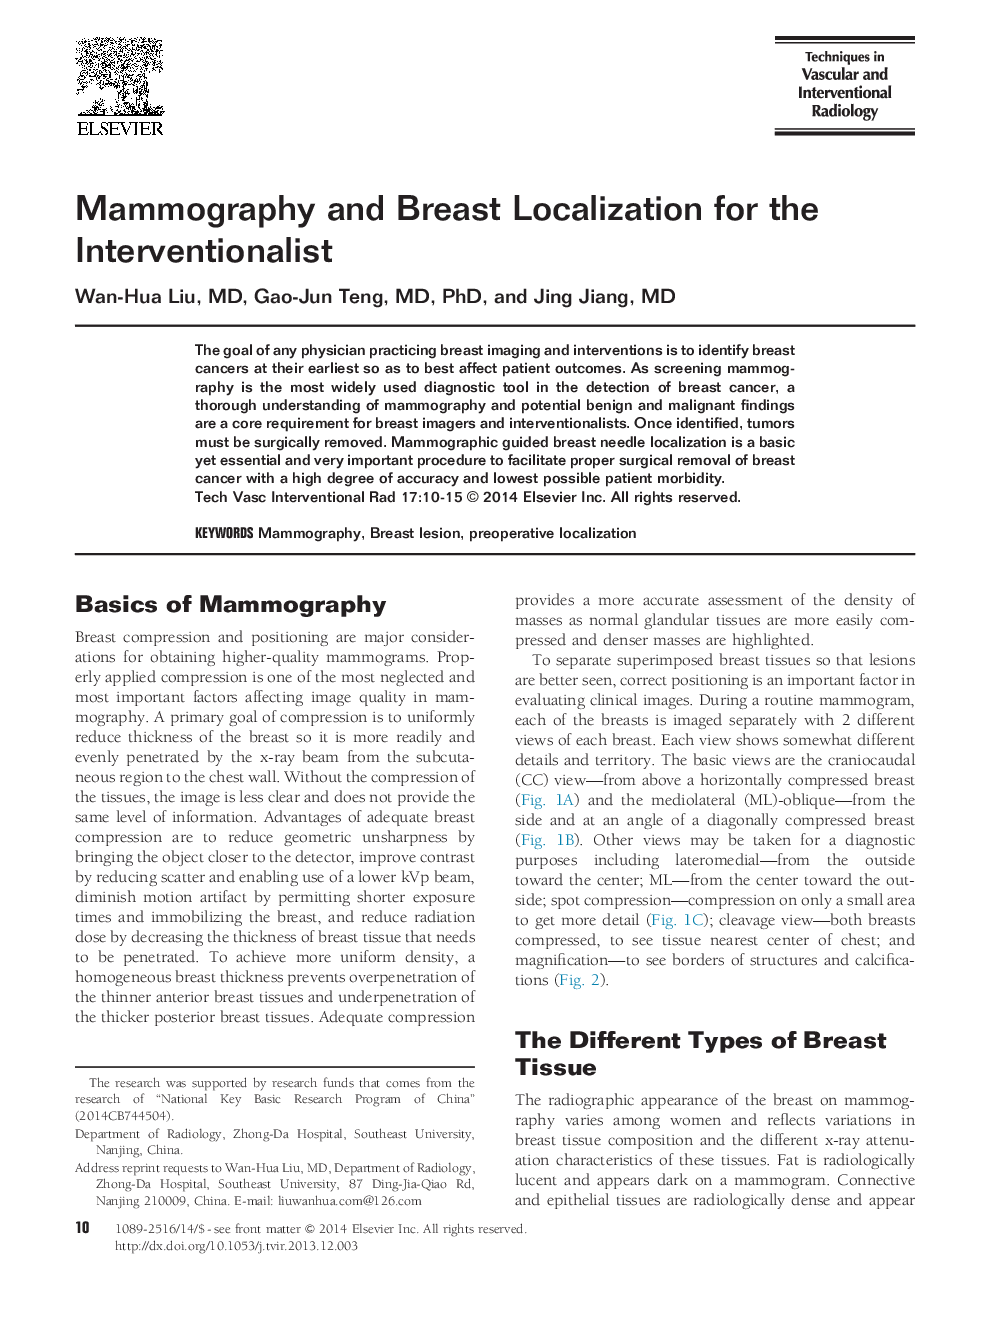 ماموگرافی و موضع گیری پستان برای مداخله گران 